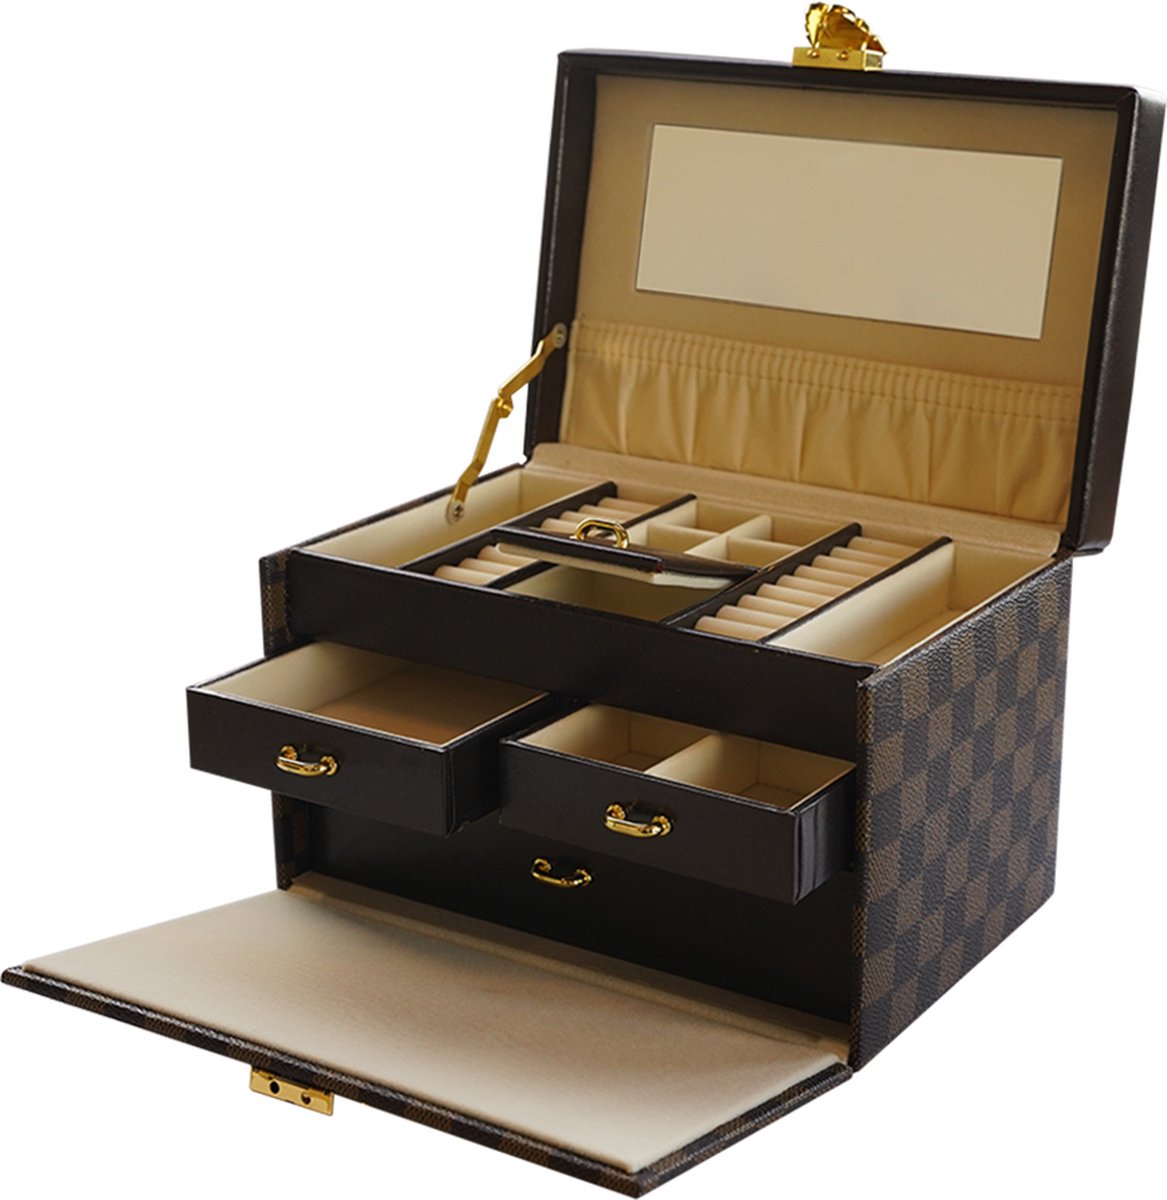 B.I.T. - Sieradendoos - Juwelendoos - Jewelrybox - Opbergbox - Deep Brown - Met slot - Met spiegel - Cadeautje voor haar